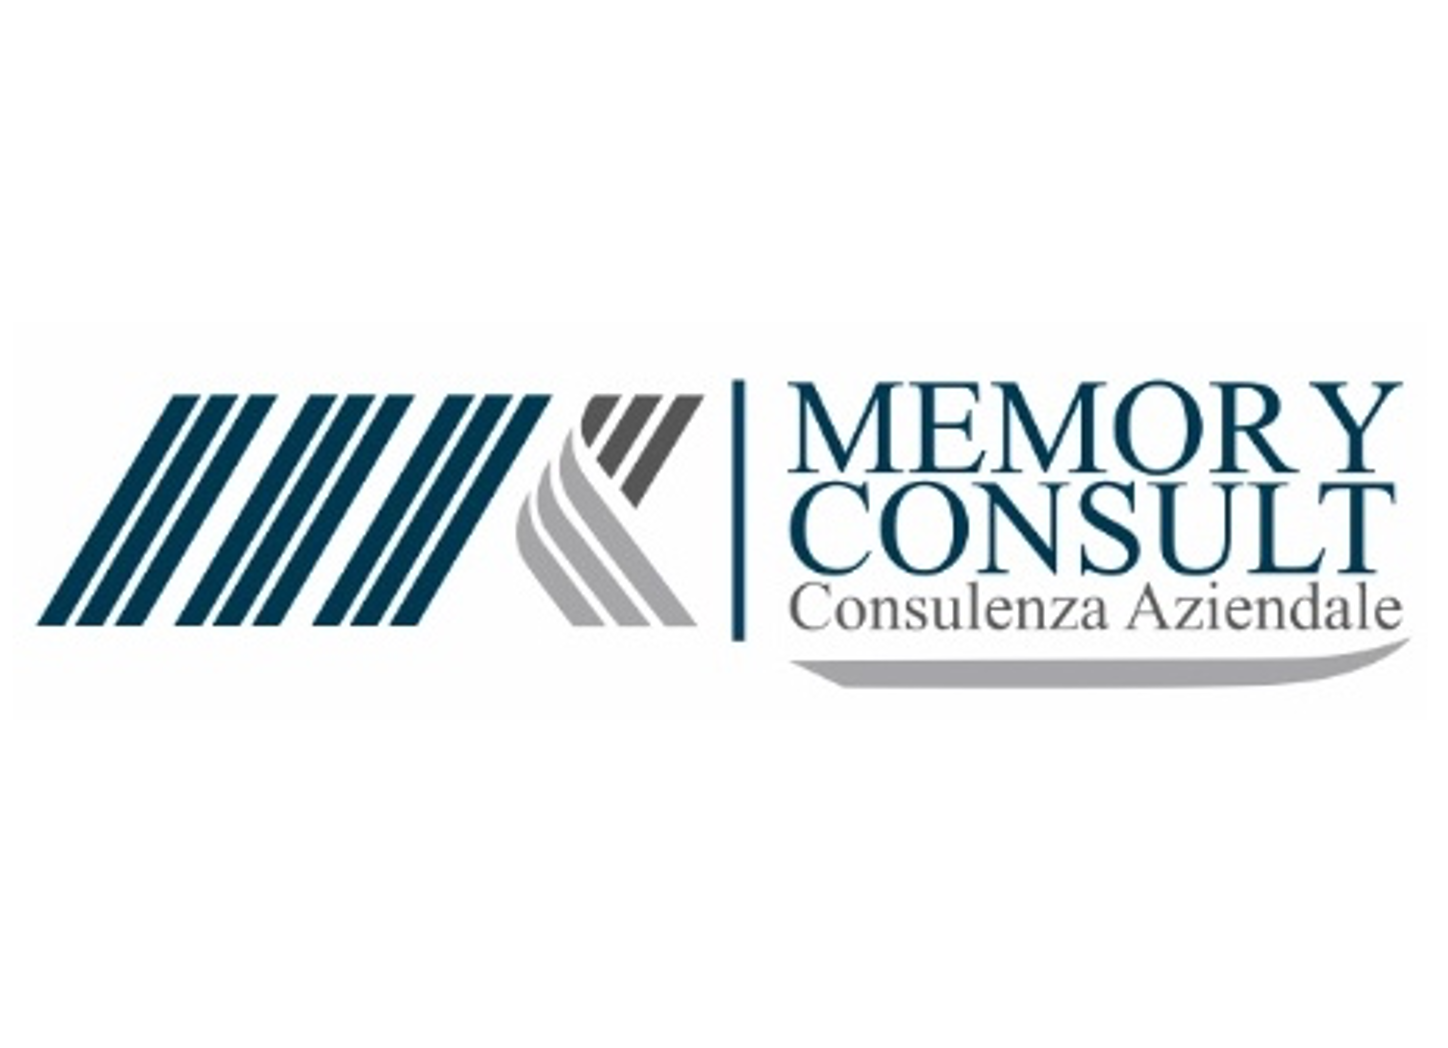 Memory consult logo